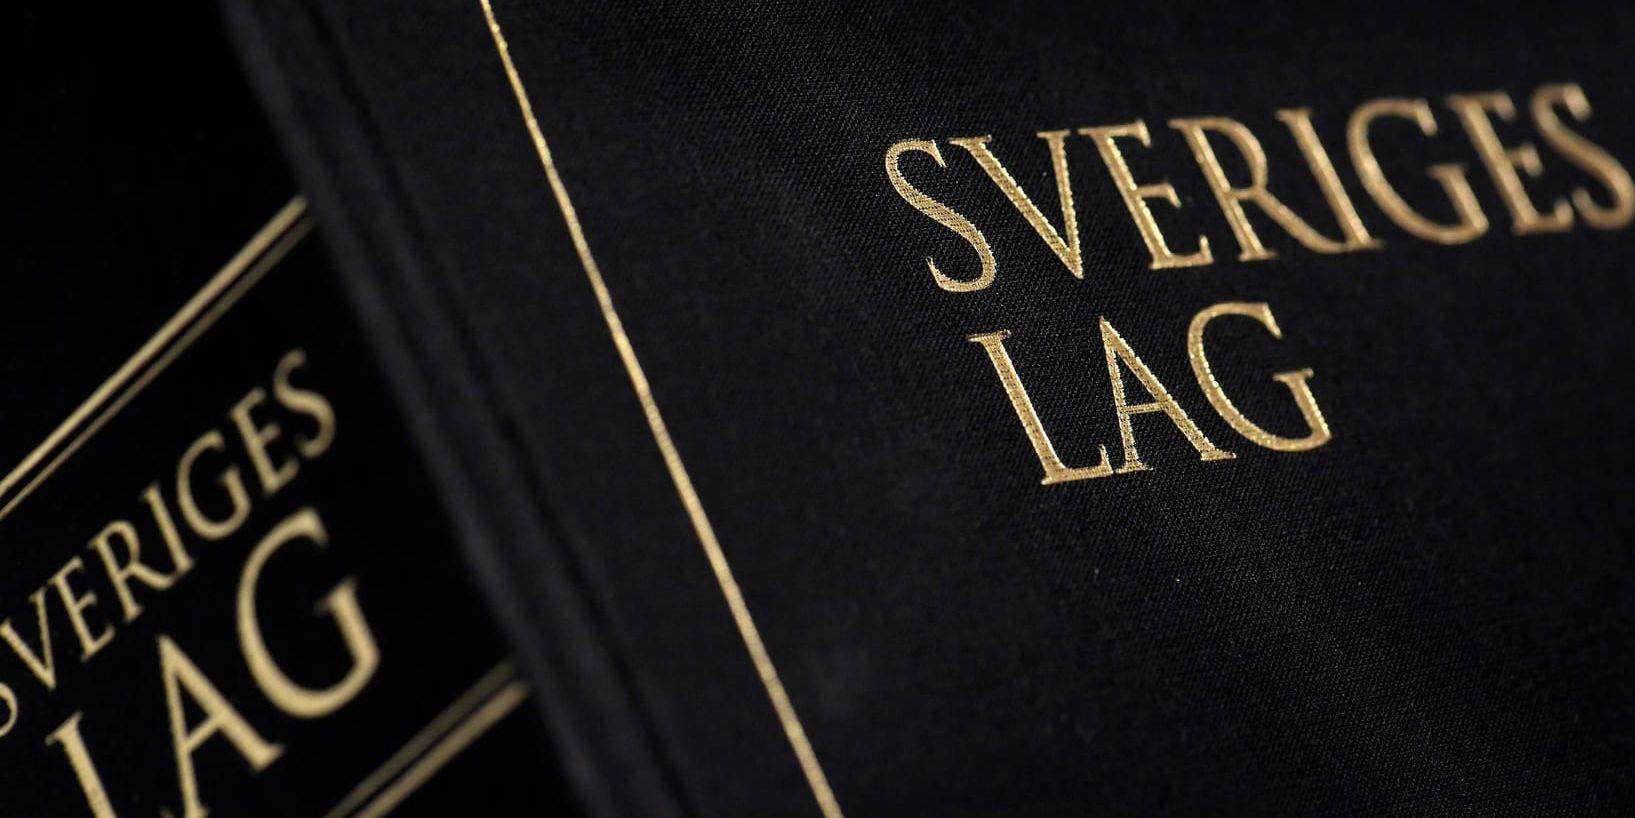 Göta hovrättens fastställer tingsrättens fängelsedom på tre års fängelse för den man i 50-årsåldern från Skaraborg som dömts för flera fall av våldtäkt mot barn. Arkivbild.